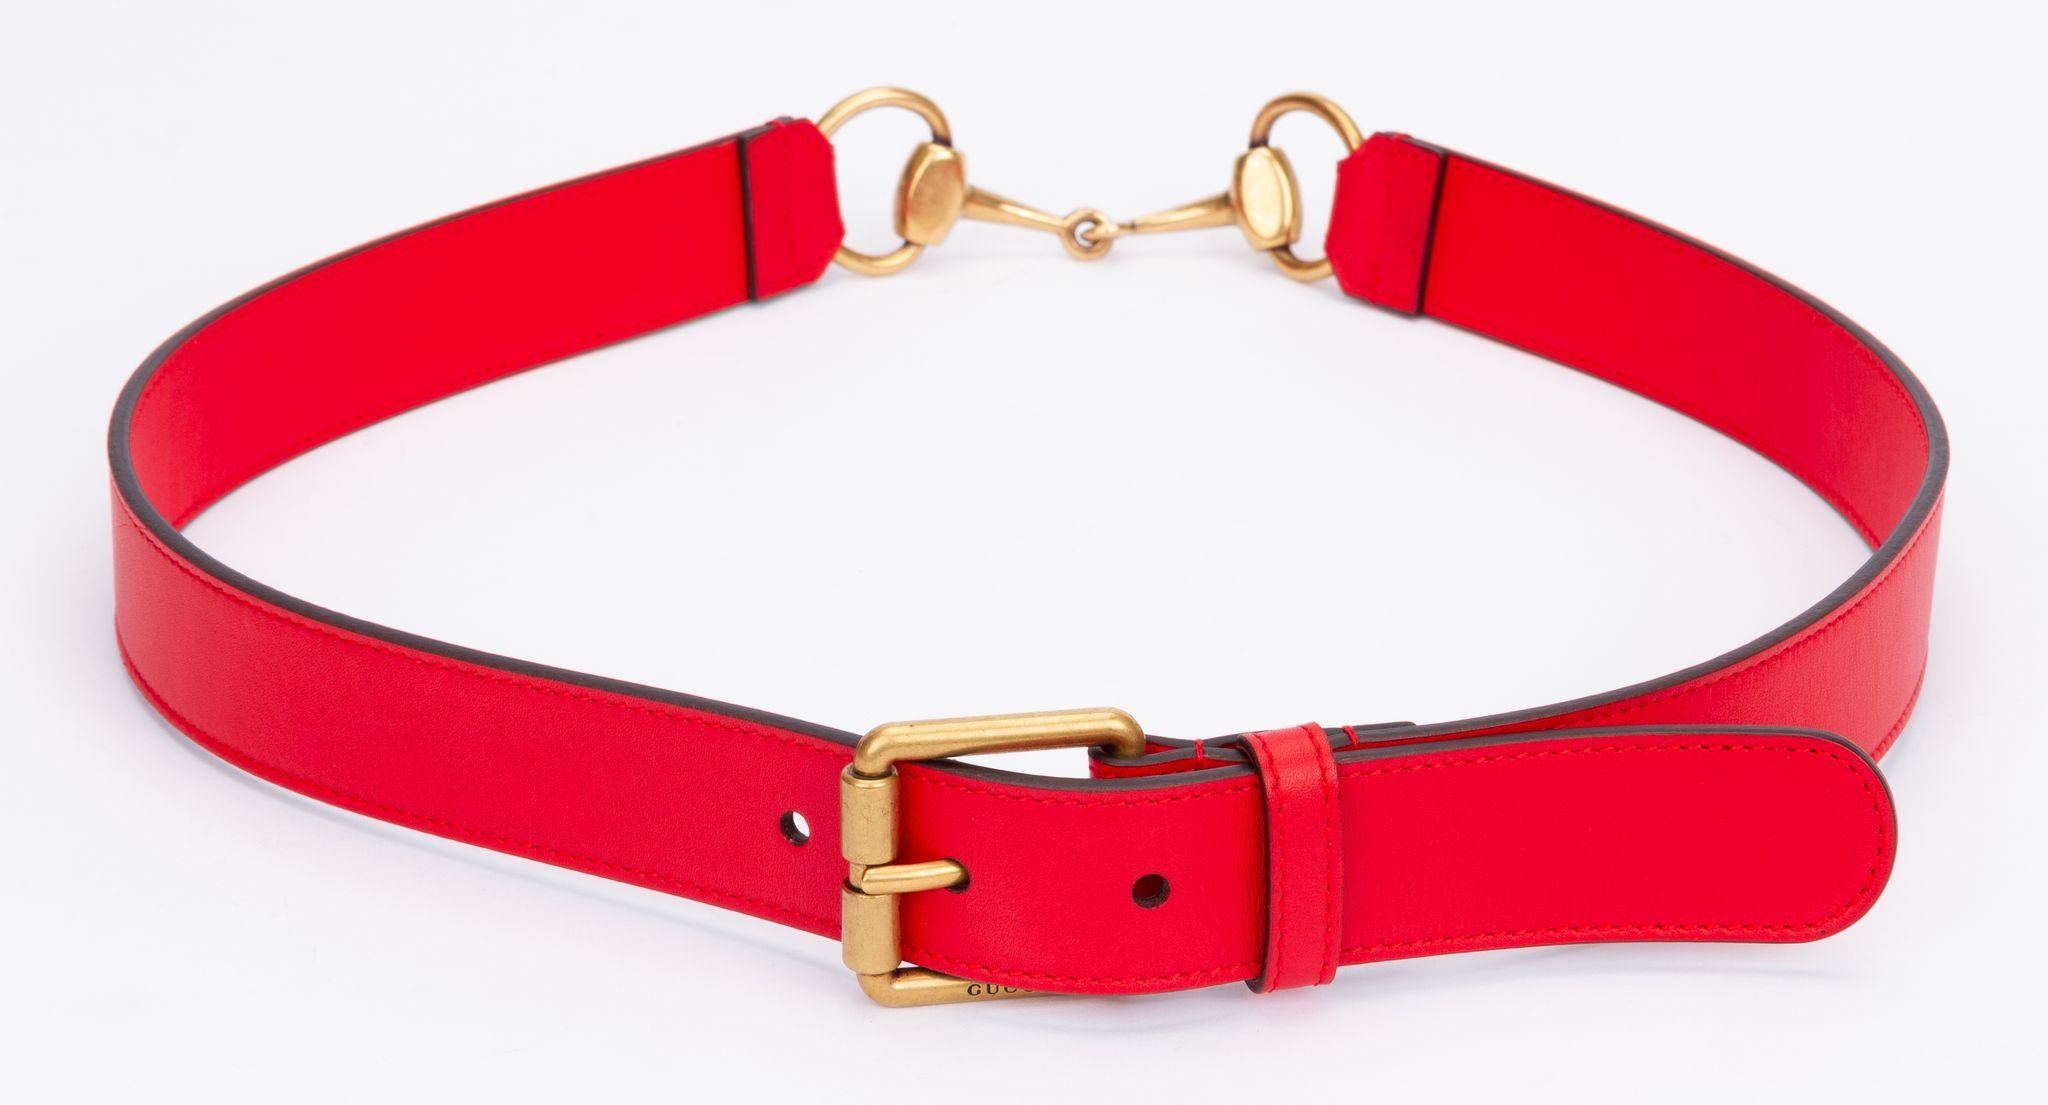 Gucci Ledergürtel in Rot mit einem Pferdegebiss, das mit goldenen Beschlägen versehen ist. Das Stück wird mit der originalen Schutzhülle geliefert.